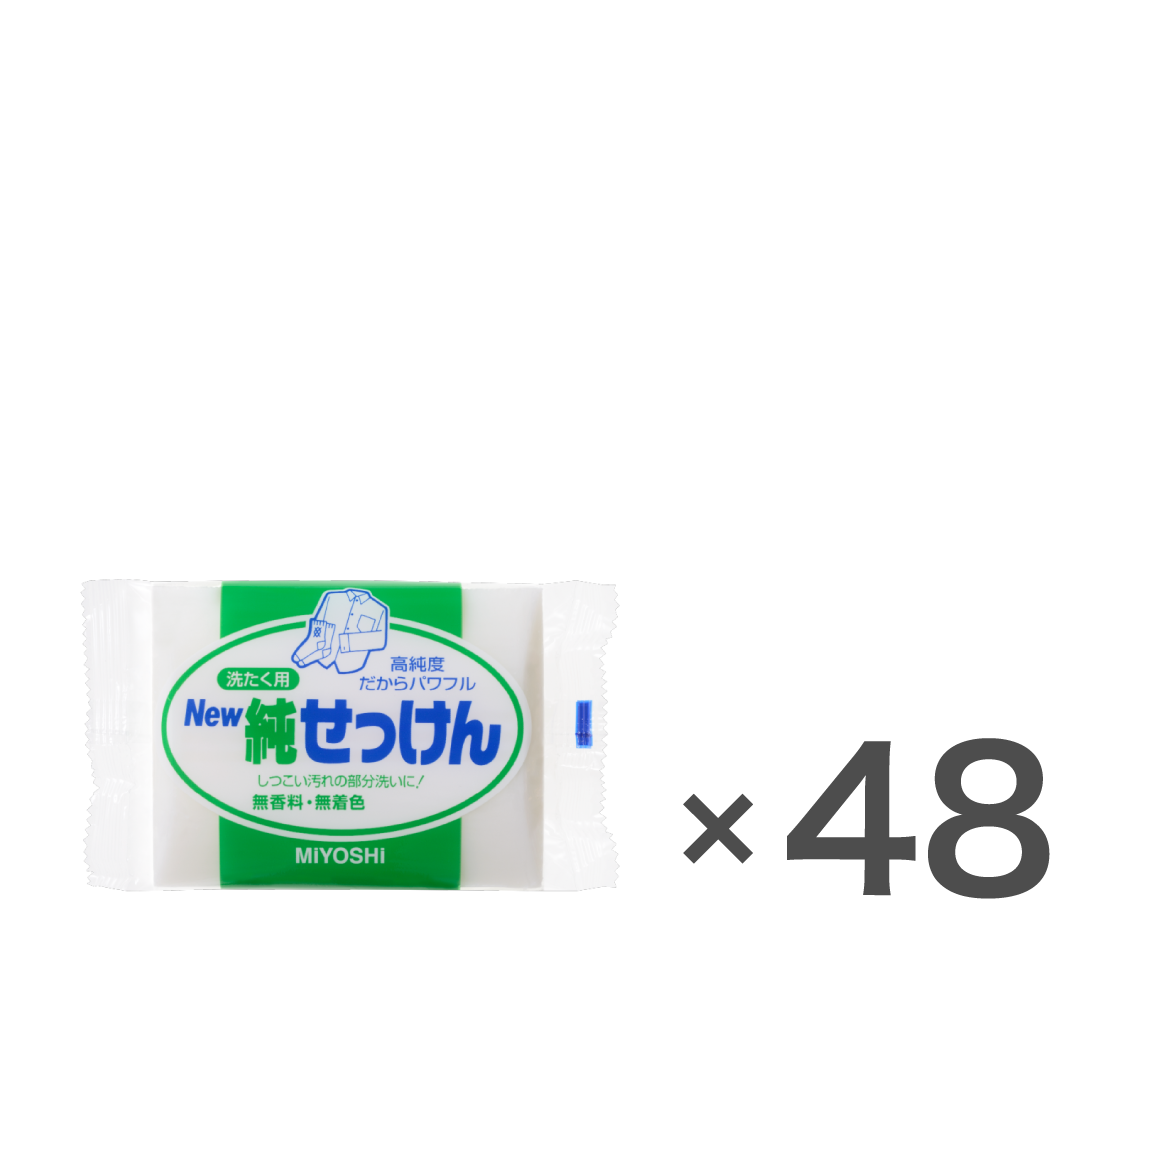 New純せっけん190gケース(48個入) – MIYOSHI SOAP CORPORATION